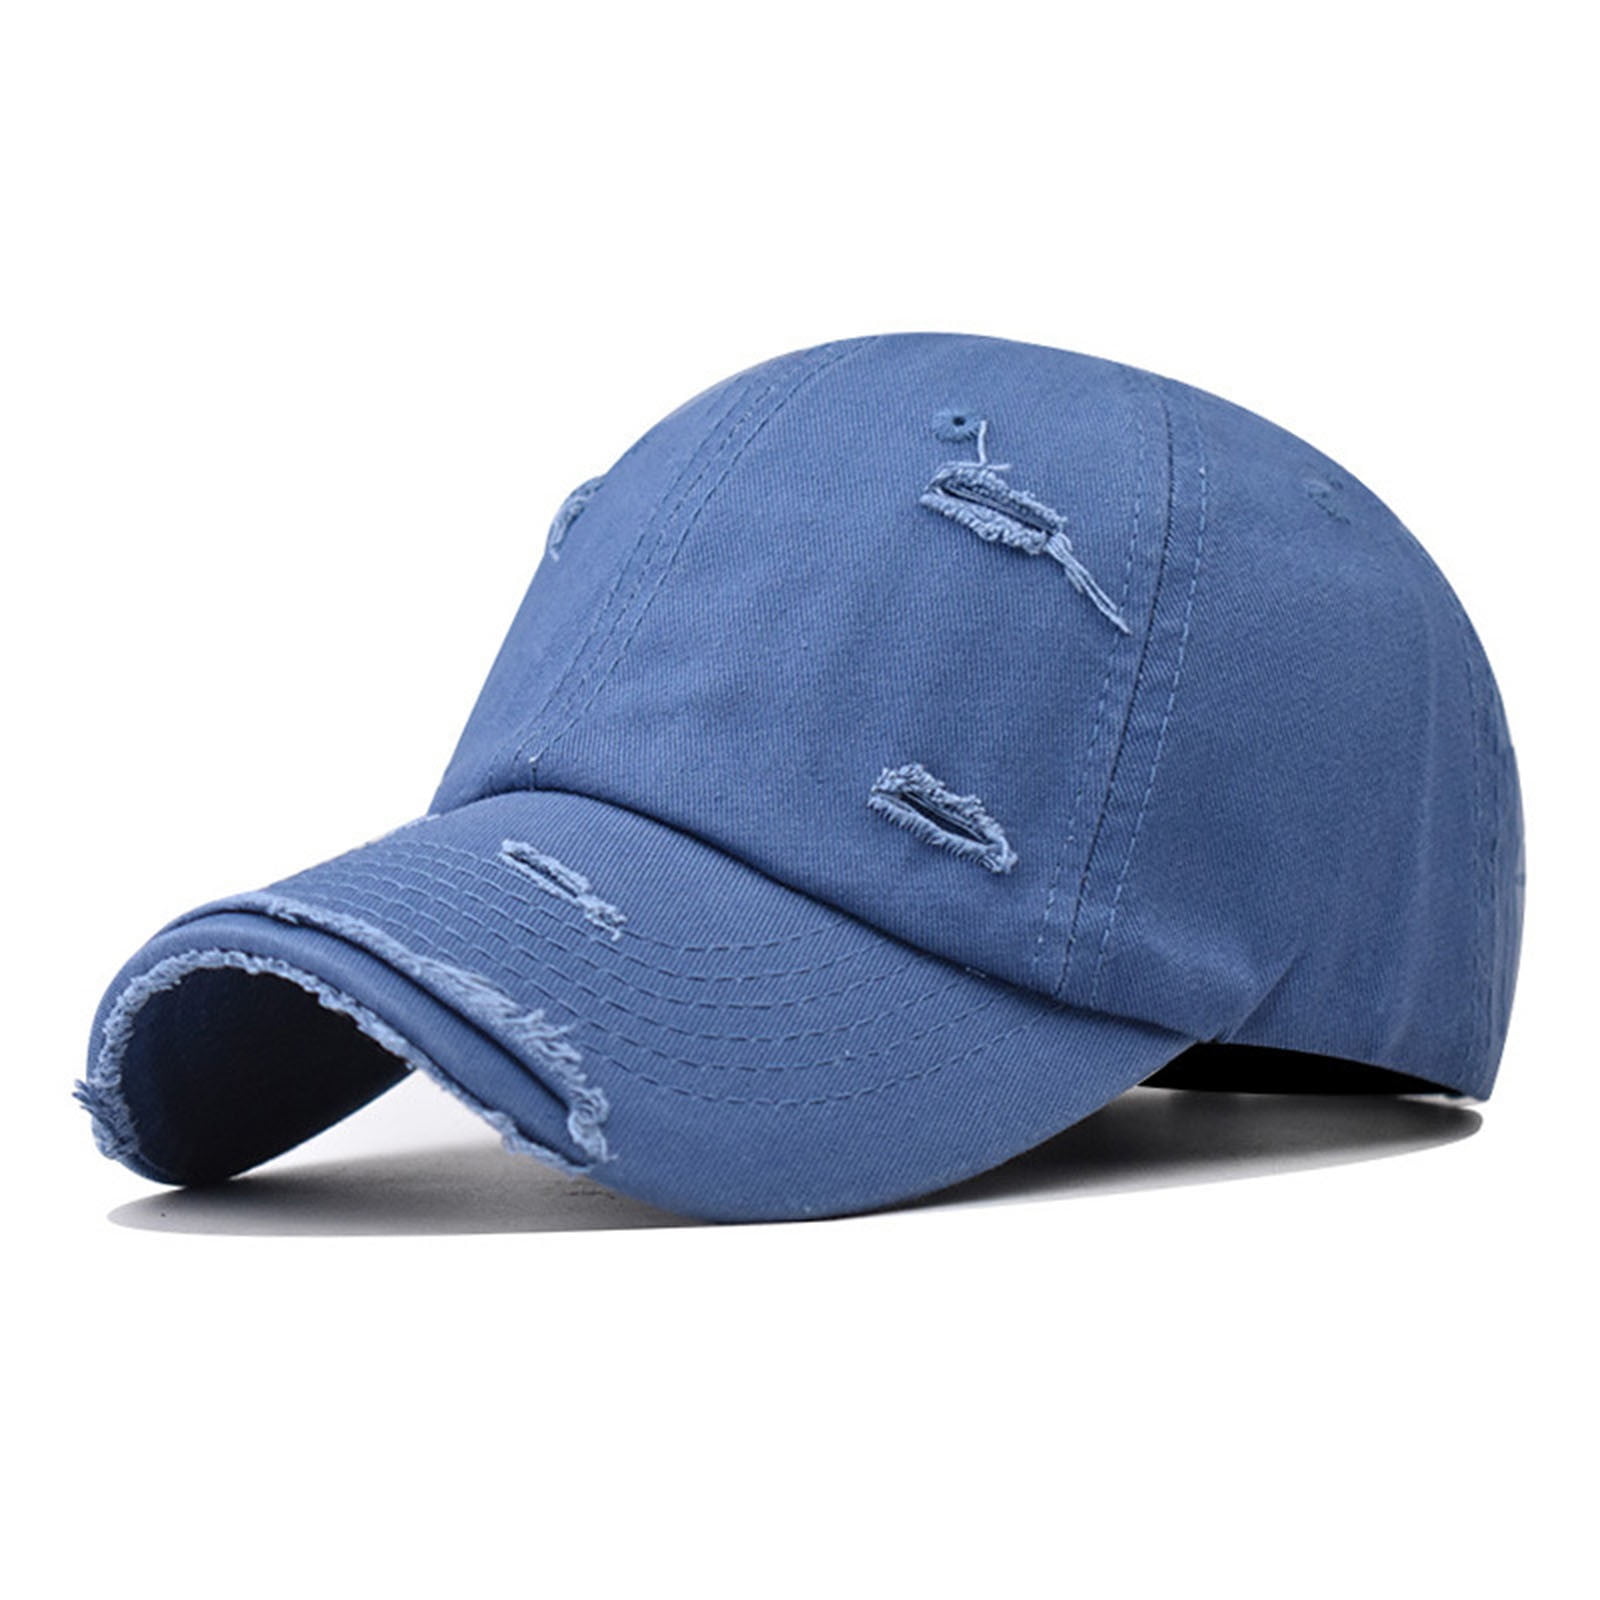 Sksloeg Hats for Men Original Classic Low Profile Baseball Cap Golf Dad Hat  Adjustable Cotton Hats Men Women Unconstructed Plain Cap,Blue One Size 